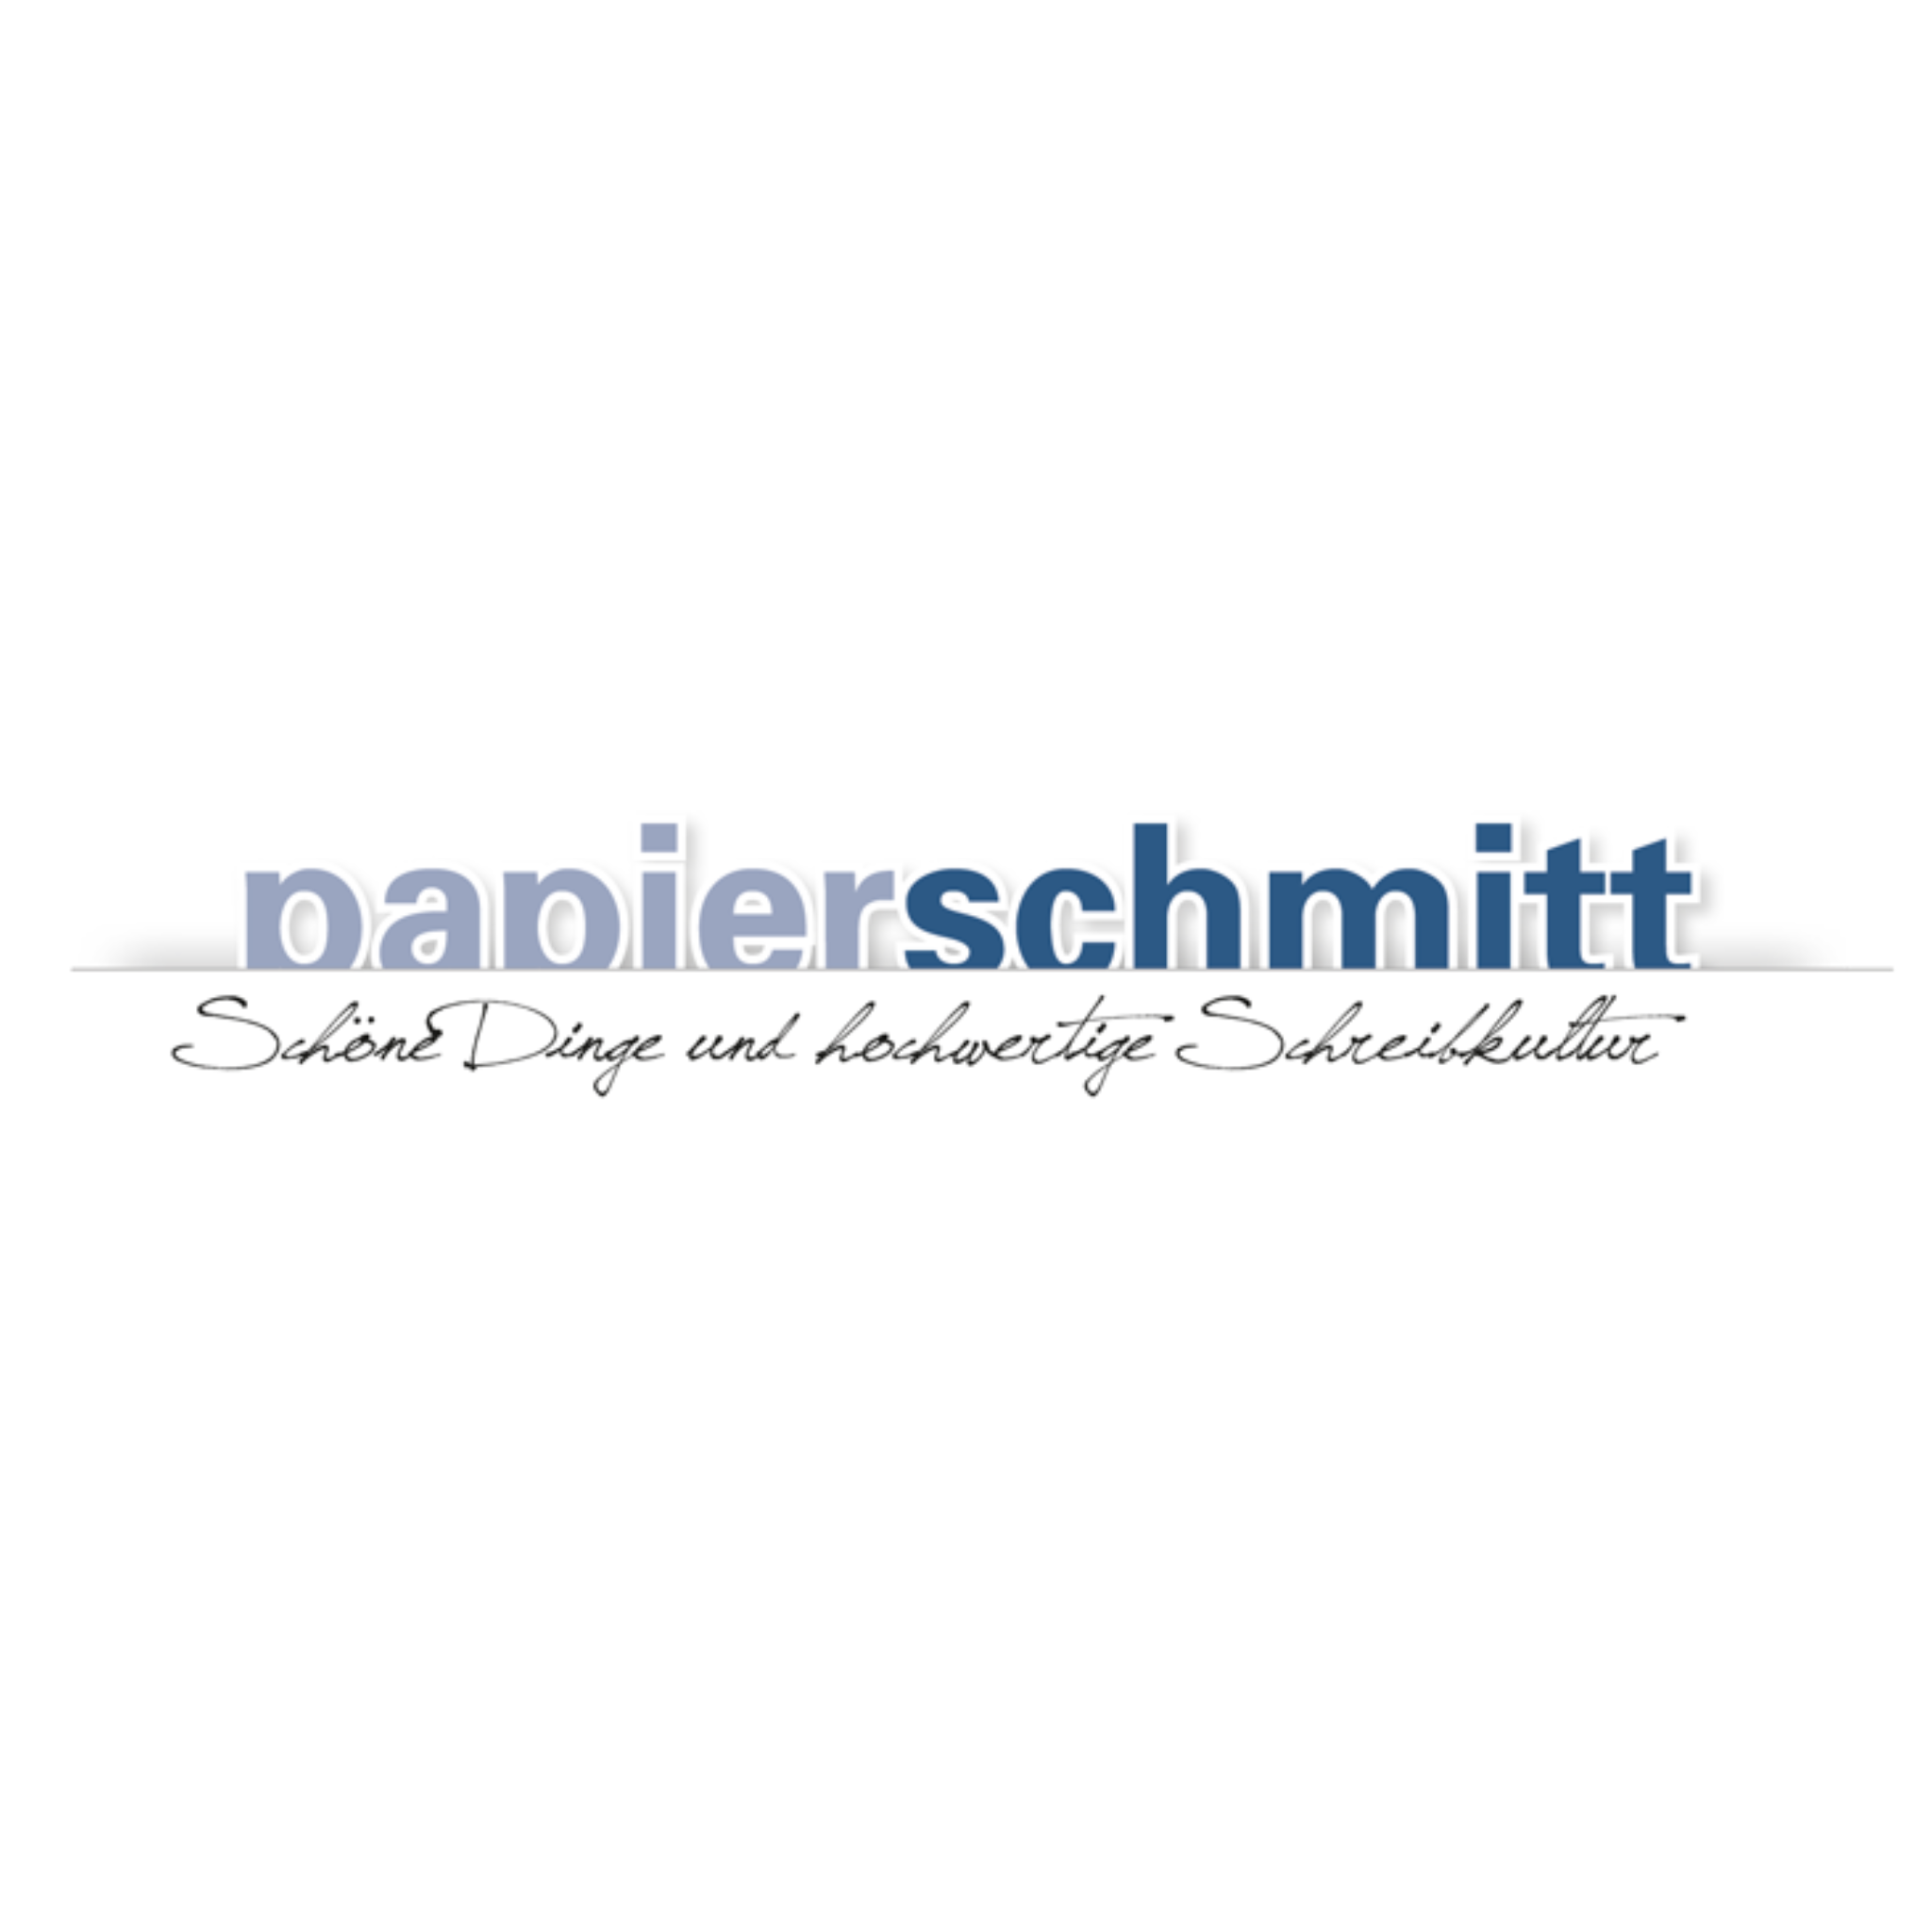 Papierschmitt e. K. in Schweinfurt - Logo